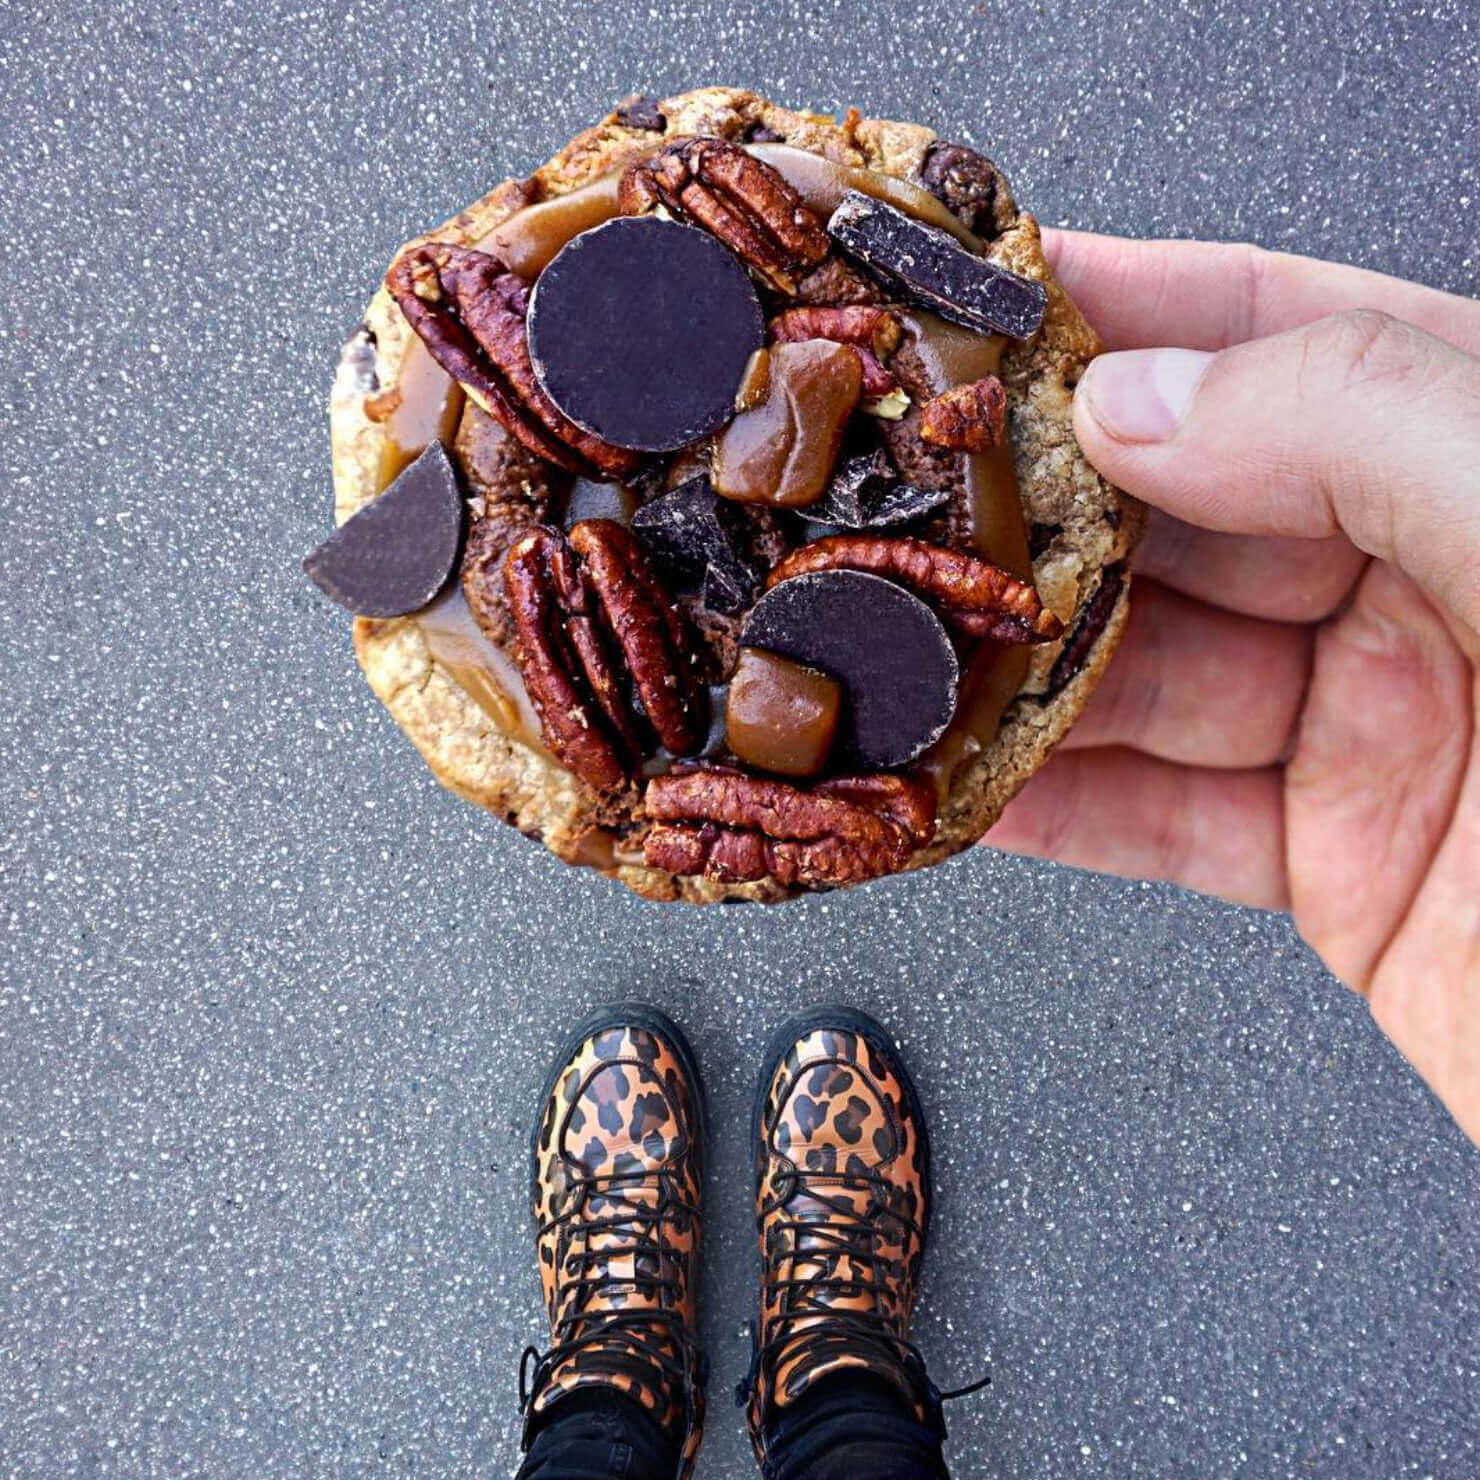 Image d'inspiration photographie Instagram d'un cookie en gros plan avec chaussures léopard assorties